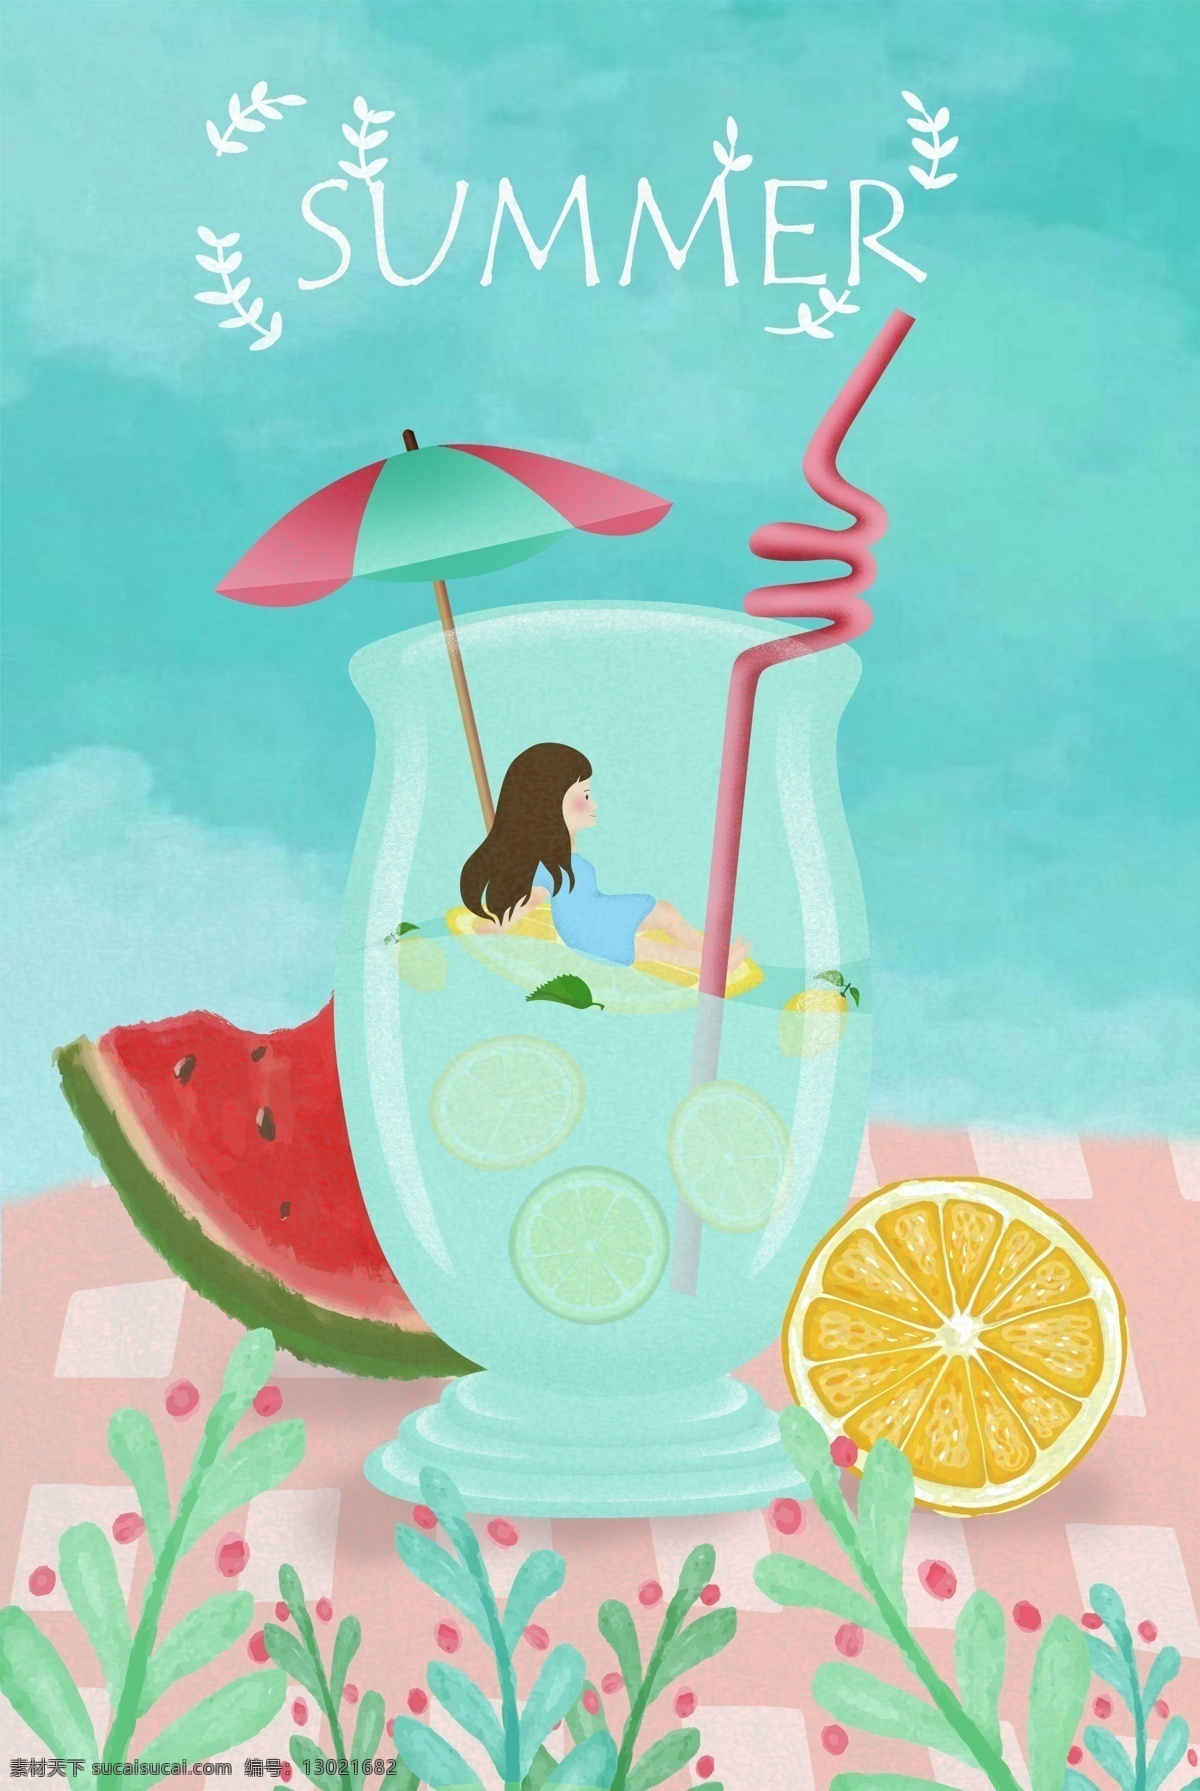 清新 夏日 宣传海报 背景 夏天 柠檬水 橙子 西瓜 女孩 太阳伞 吸管 植物 手绘 summer